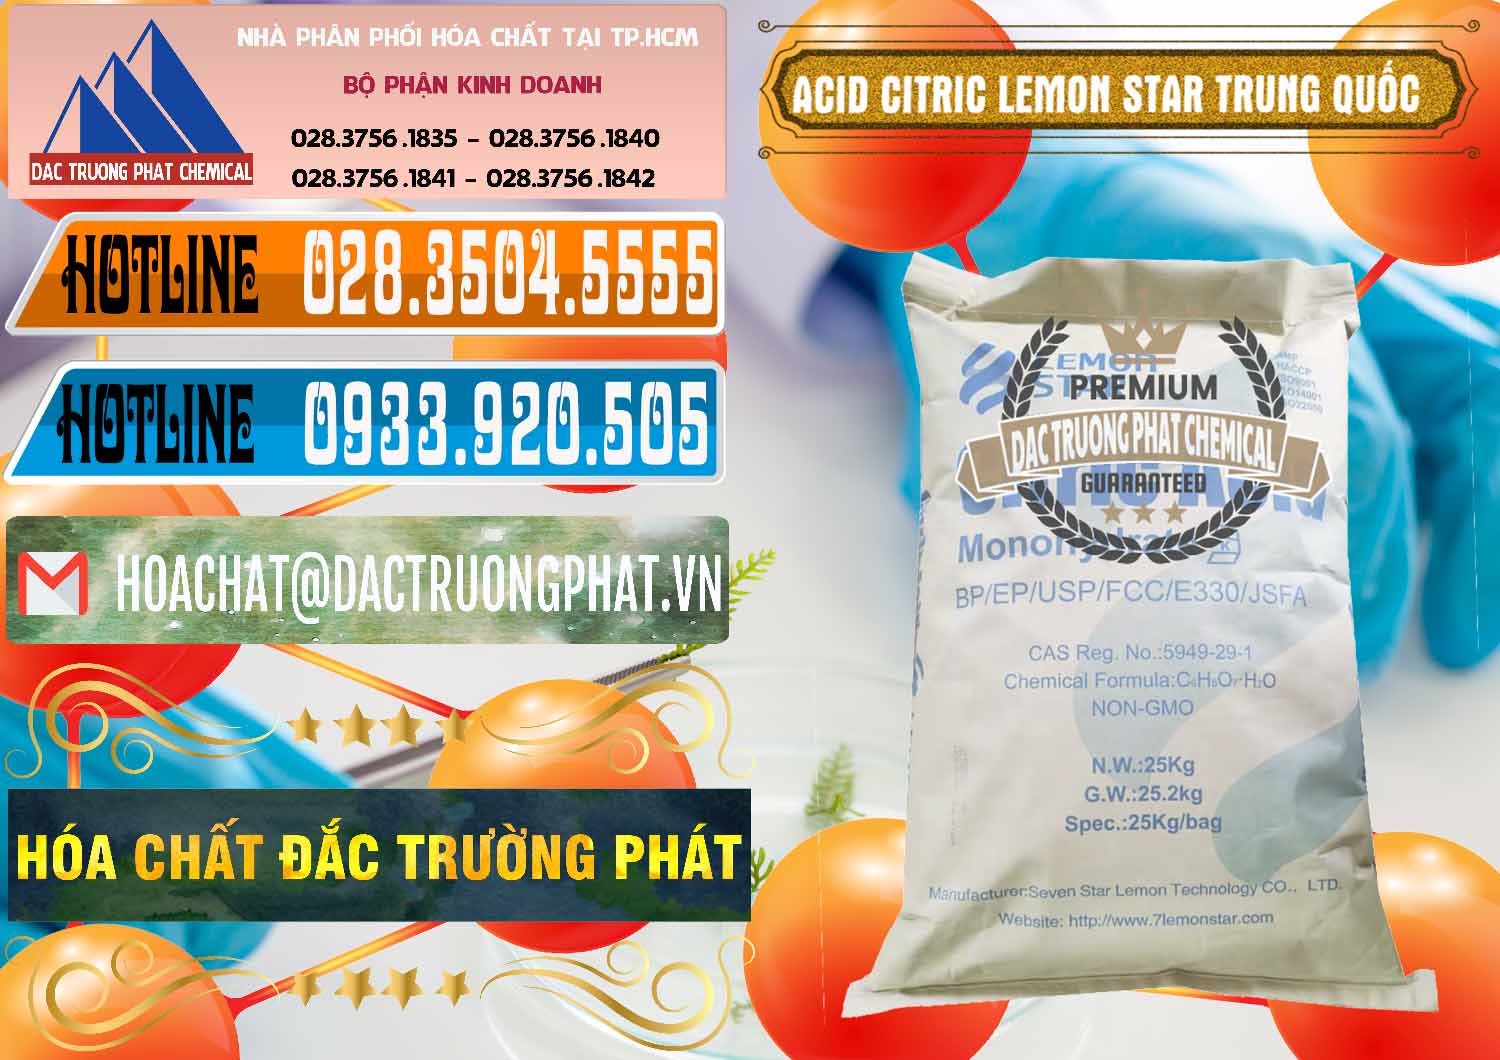 Đơn vị chuyên bán & phân phối Acid Citric - Axit Citric BP/EP/USP/FCC/E330 Lemon Star Trung Quốc China - 0286 - Đơn vị chuyên phân phối _ nhập khẩu hóa chất tại TP.HCM - stmp.net